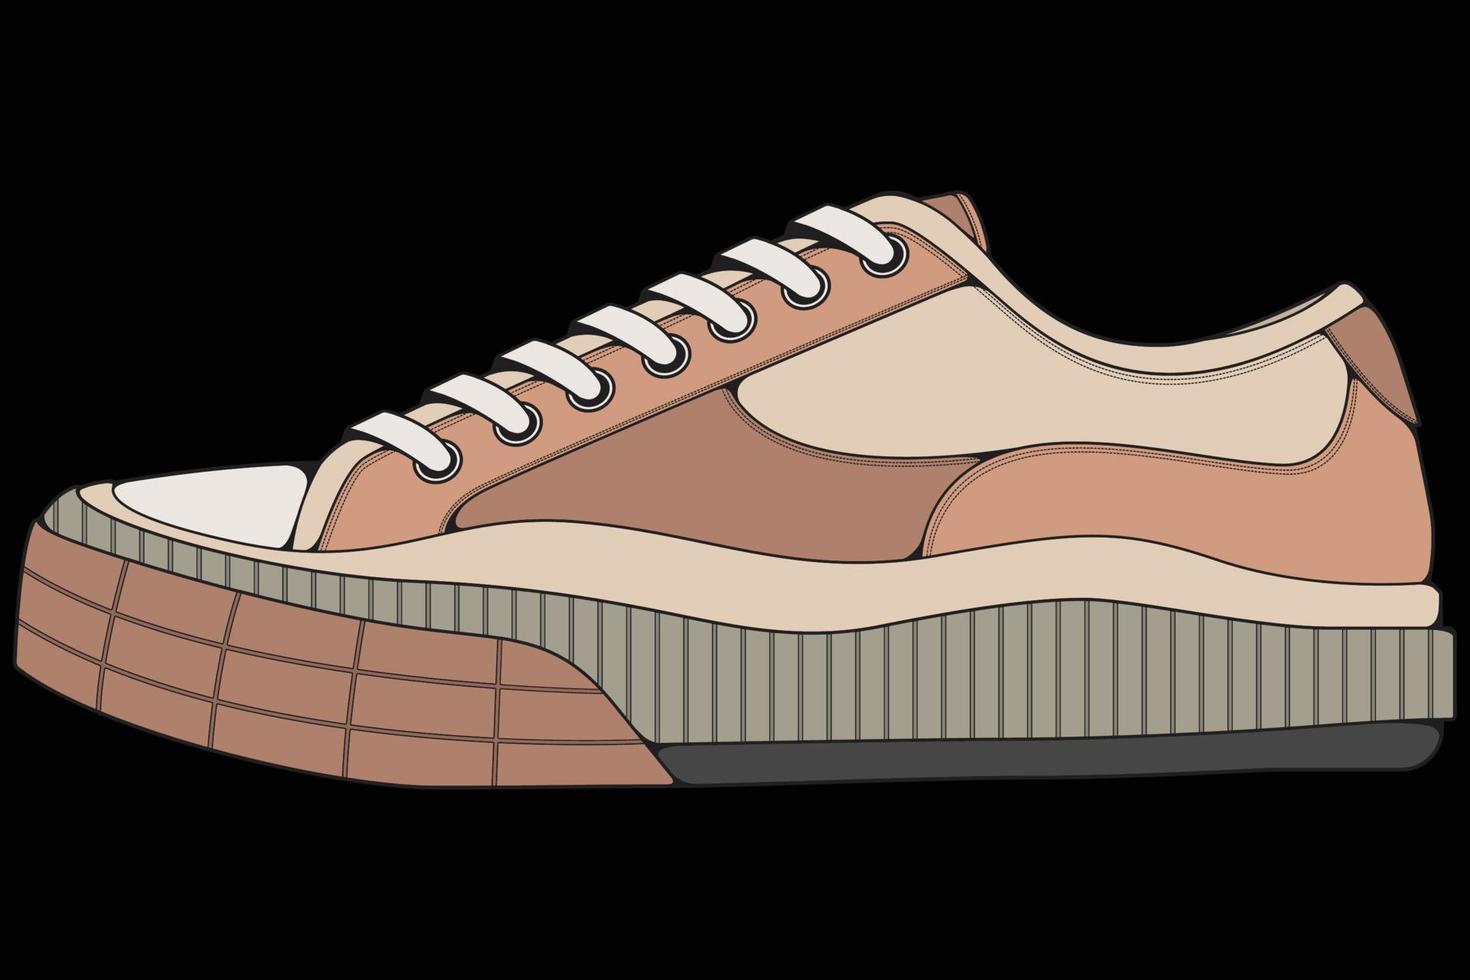 chaussures de baskets vectorielles pour l'entraînement, illustration vectorielle de chaussure de course. chaussures de sport couleur pleine. vecteur